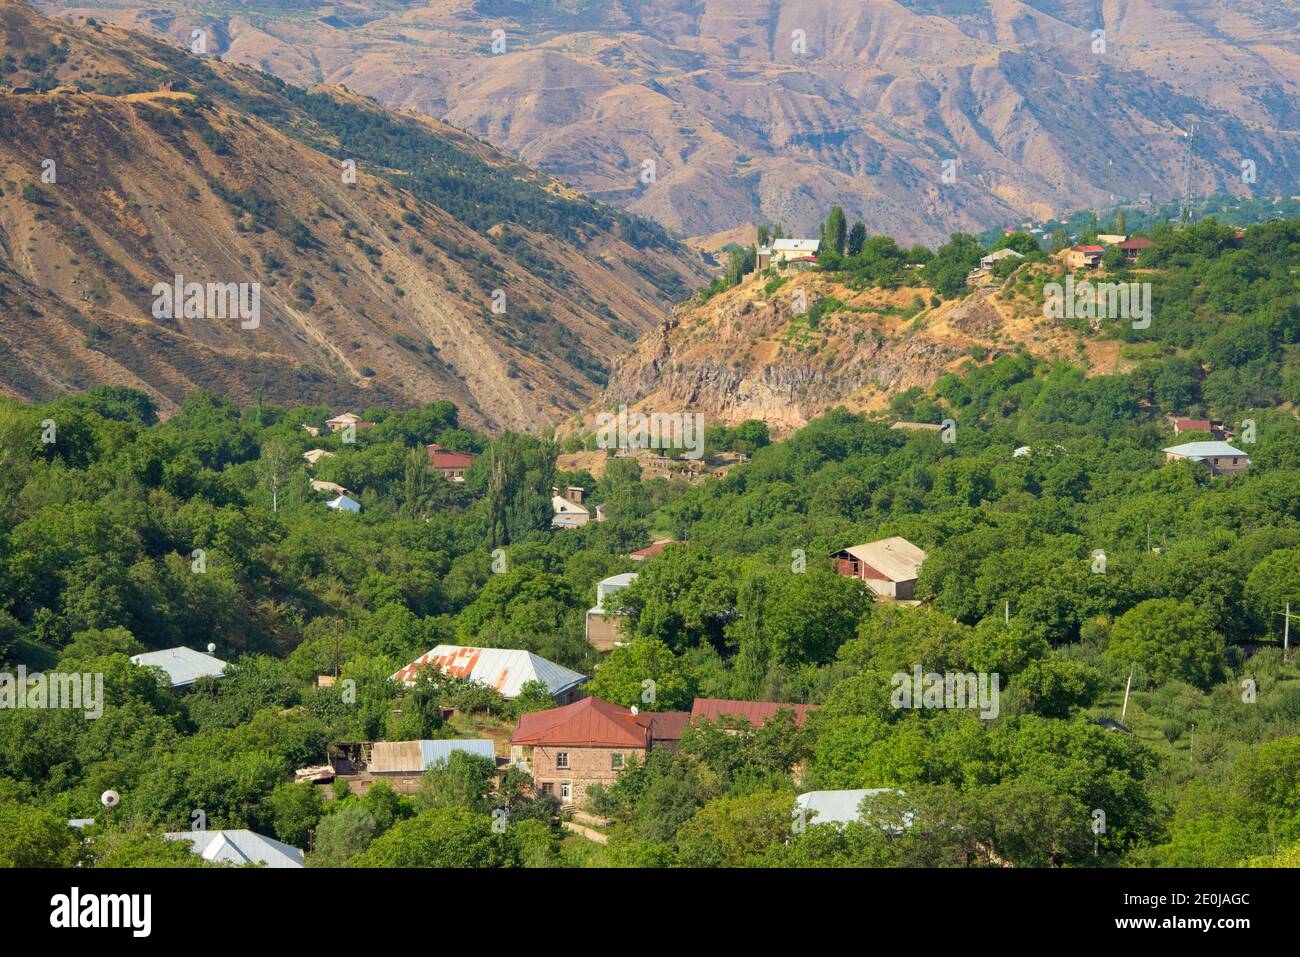 Garni village in the mountain, Kotayk Province, Armenia Stock Photo